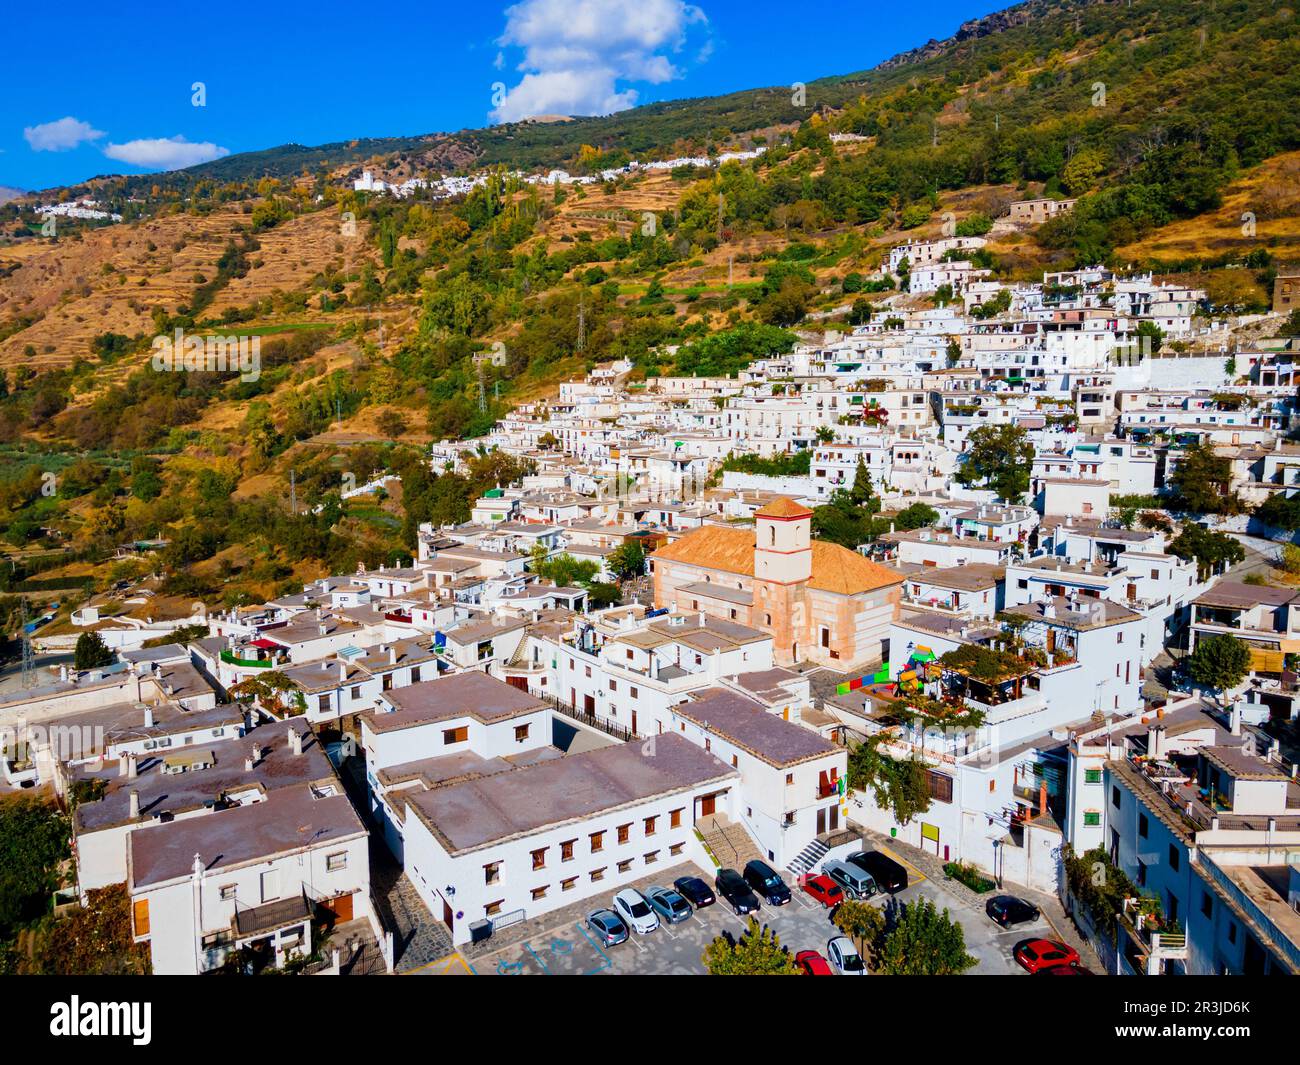 Vista panoramica aerea del villaggio di Pampaneira. Pampaneira è un comune spagnolo di 81 abitanti della provincia di Granada, nella regione di Alpujarras. Foto Stock